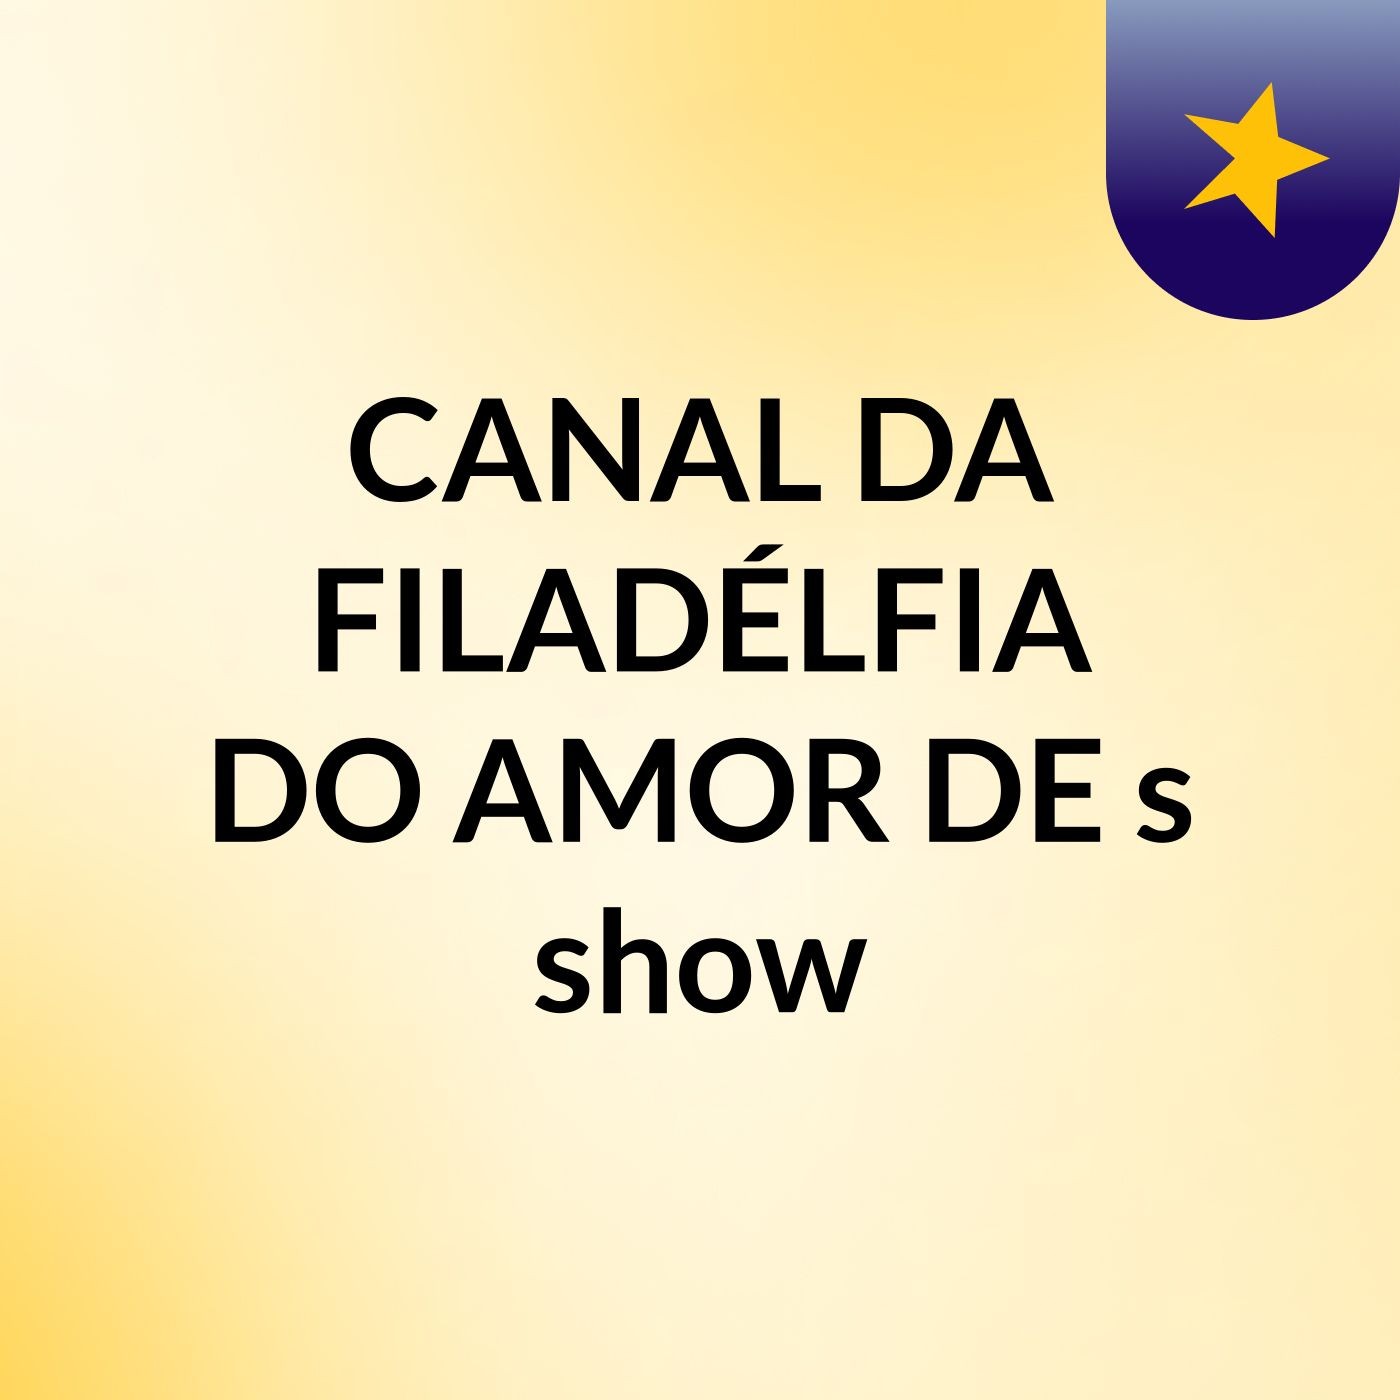 CANAL DA FILADÉLFIA DO AMOR DE's show